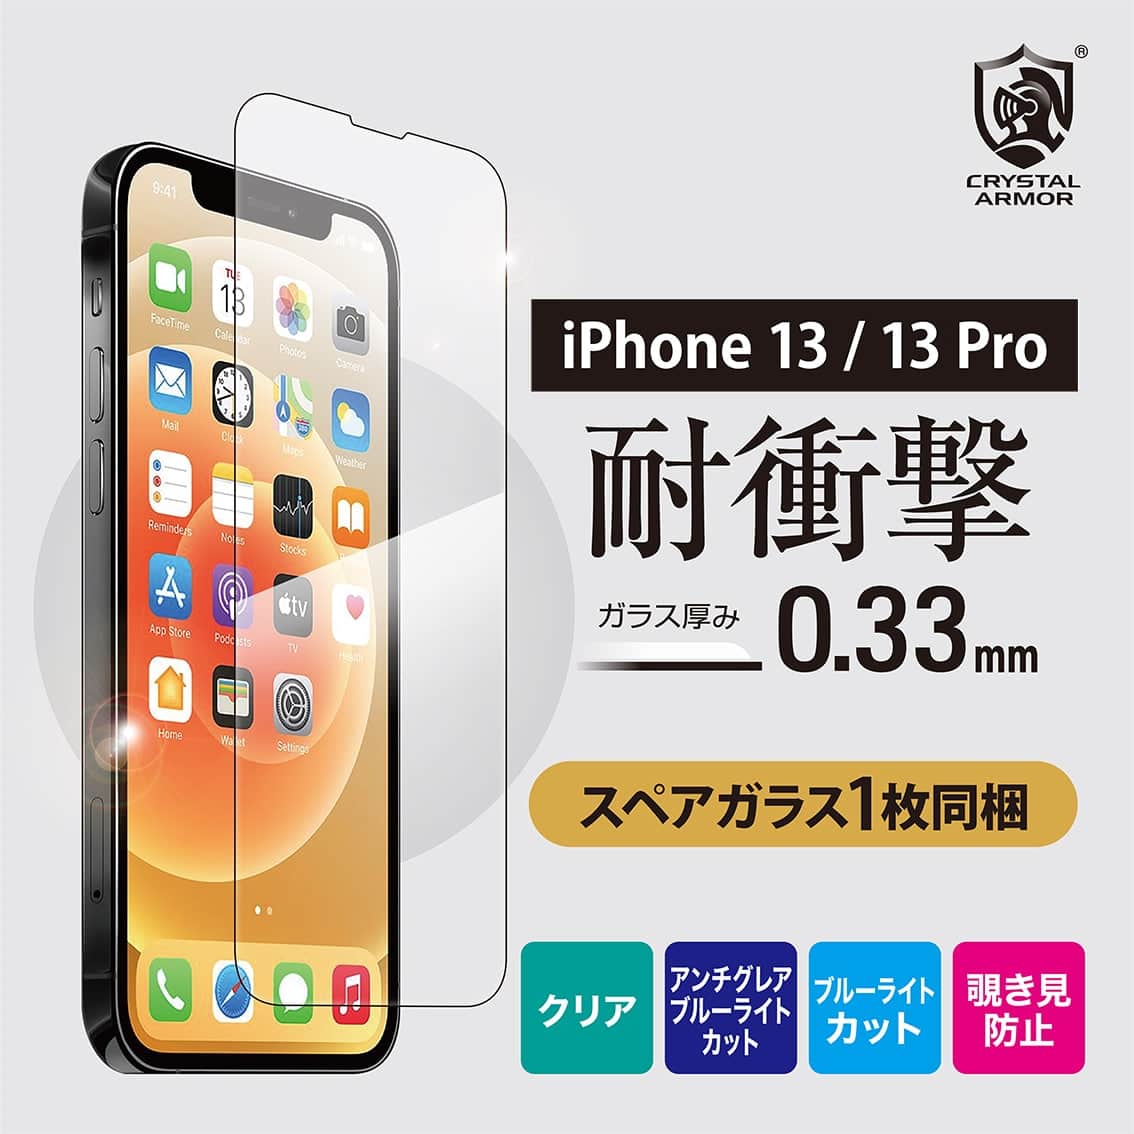 新型 iPhone13 / 13Pro 対応 0.33mm 耐衝撃 ガラスフィルム クリア アンチグレアブルーライトカット ブルーライトカット 覗き見防止 iPhone 2021年モデル 6.1インチ